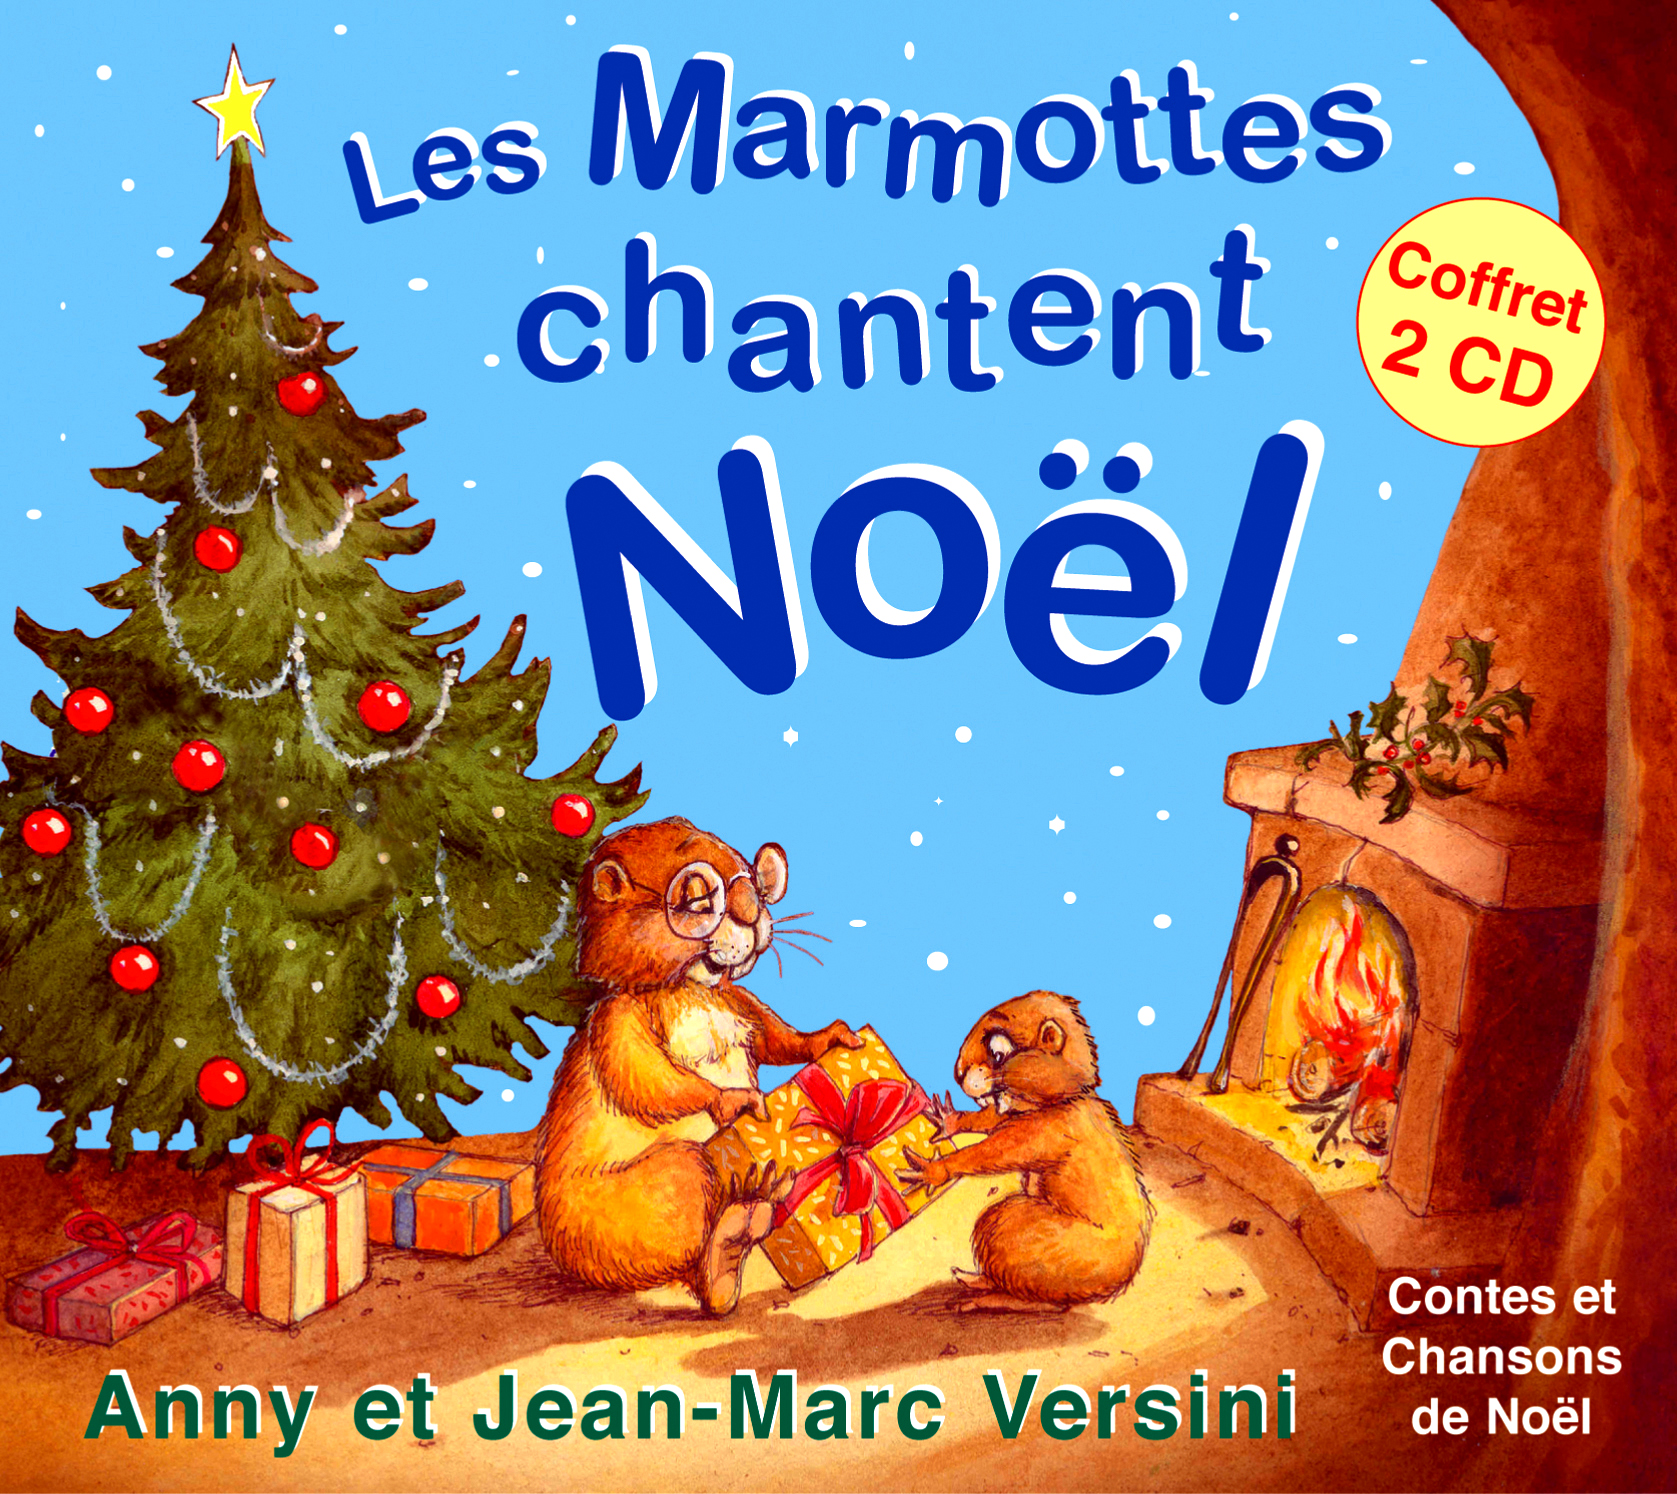 Les 2 Marmottes prépare Noël